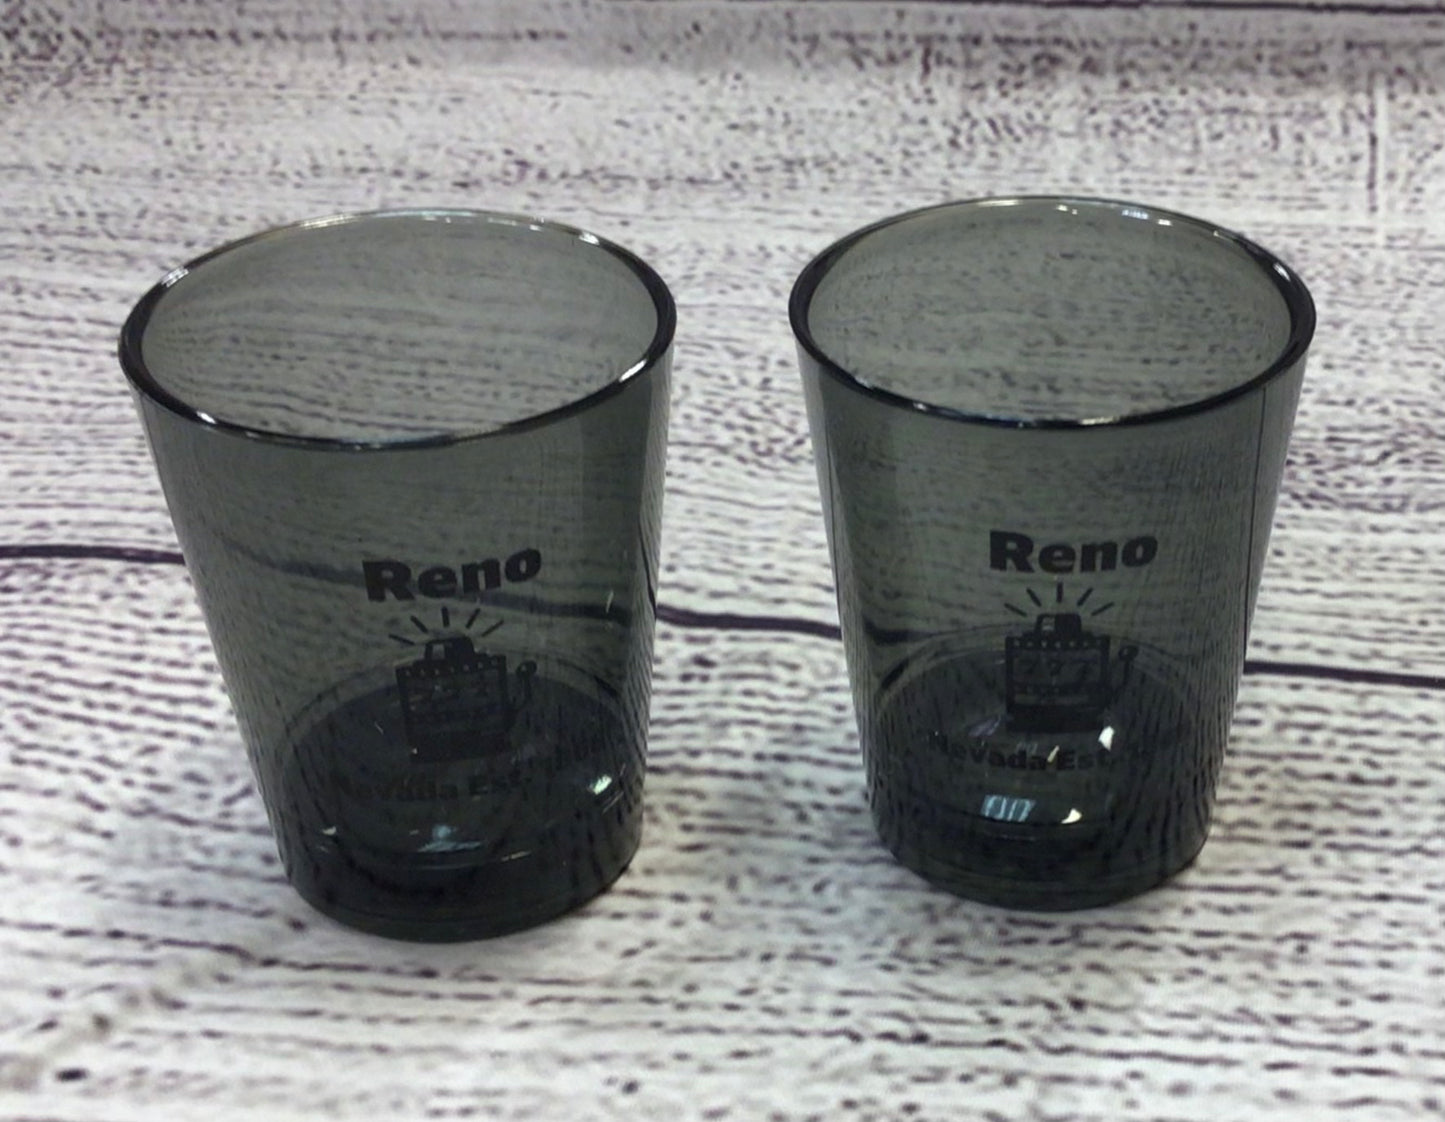 Plastic Reno shot glass